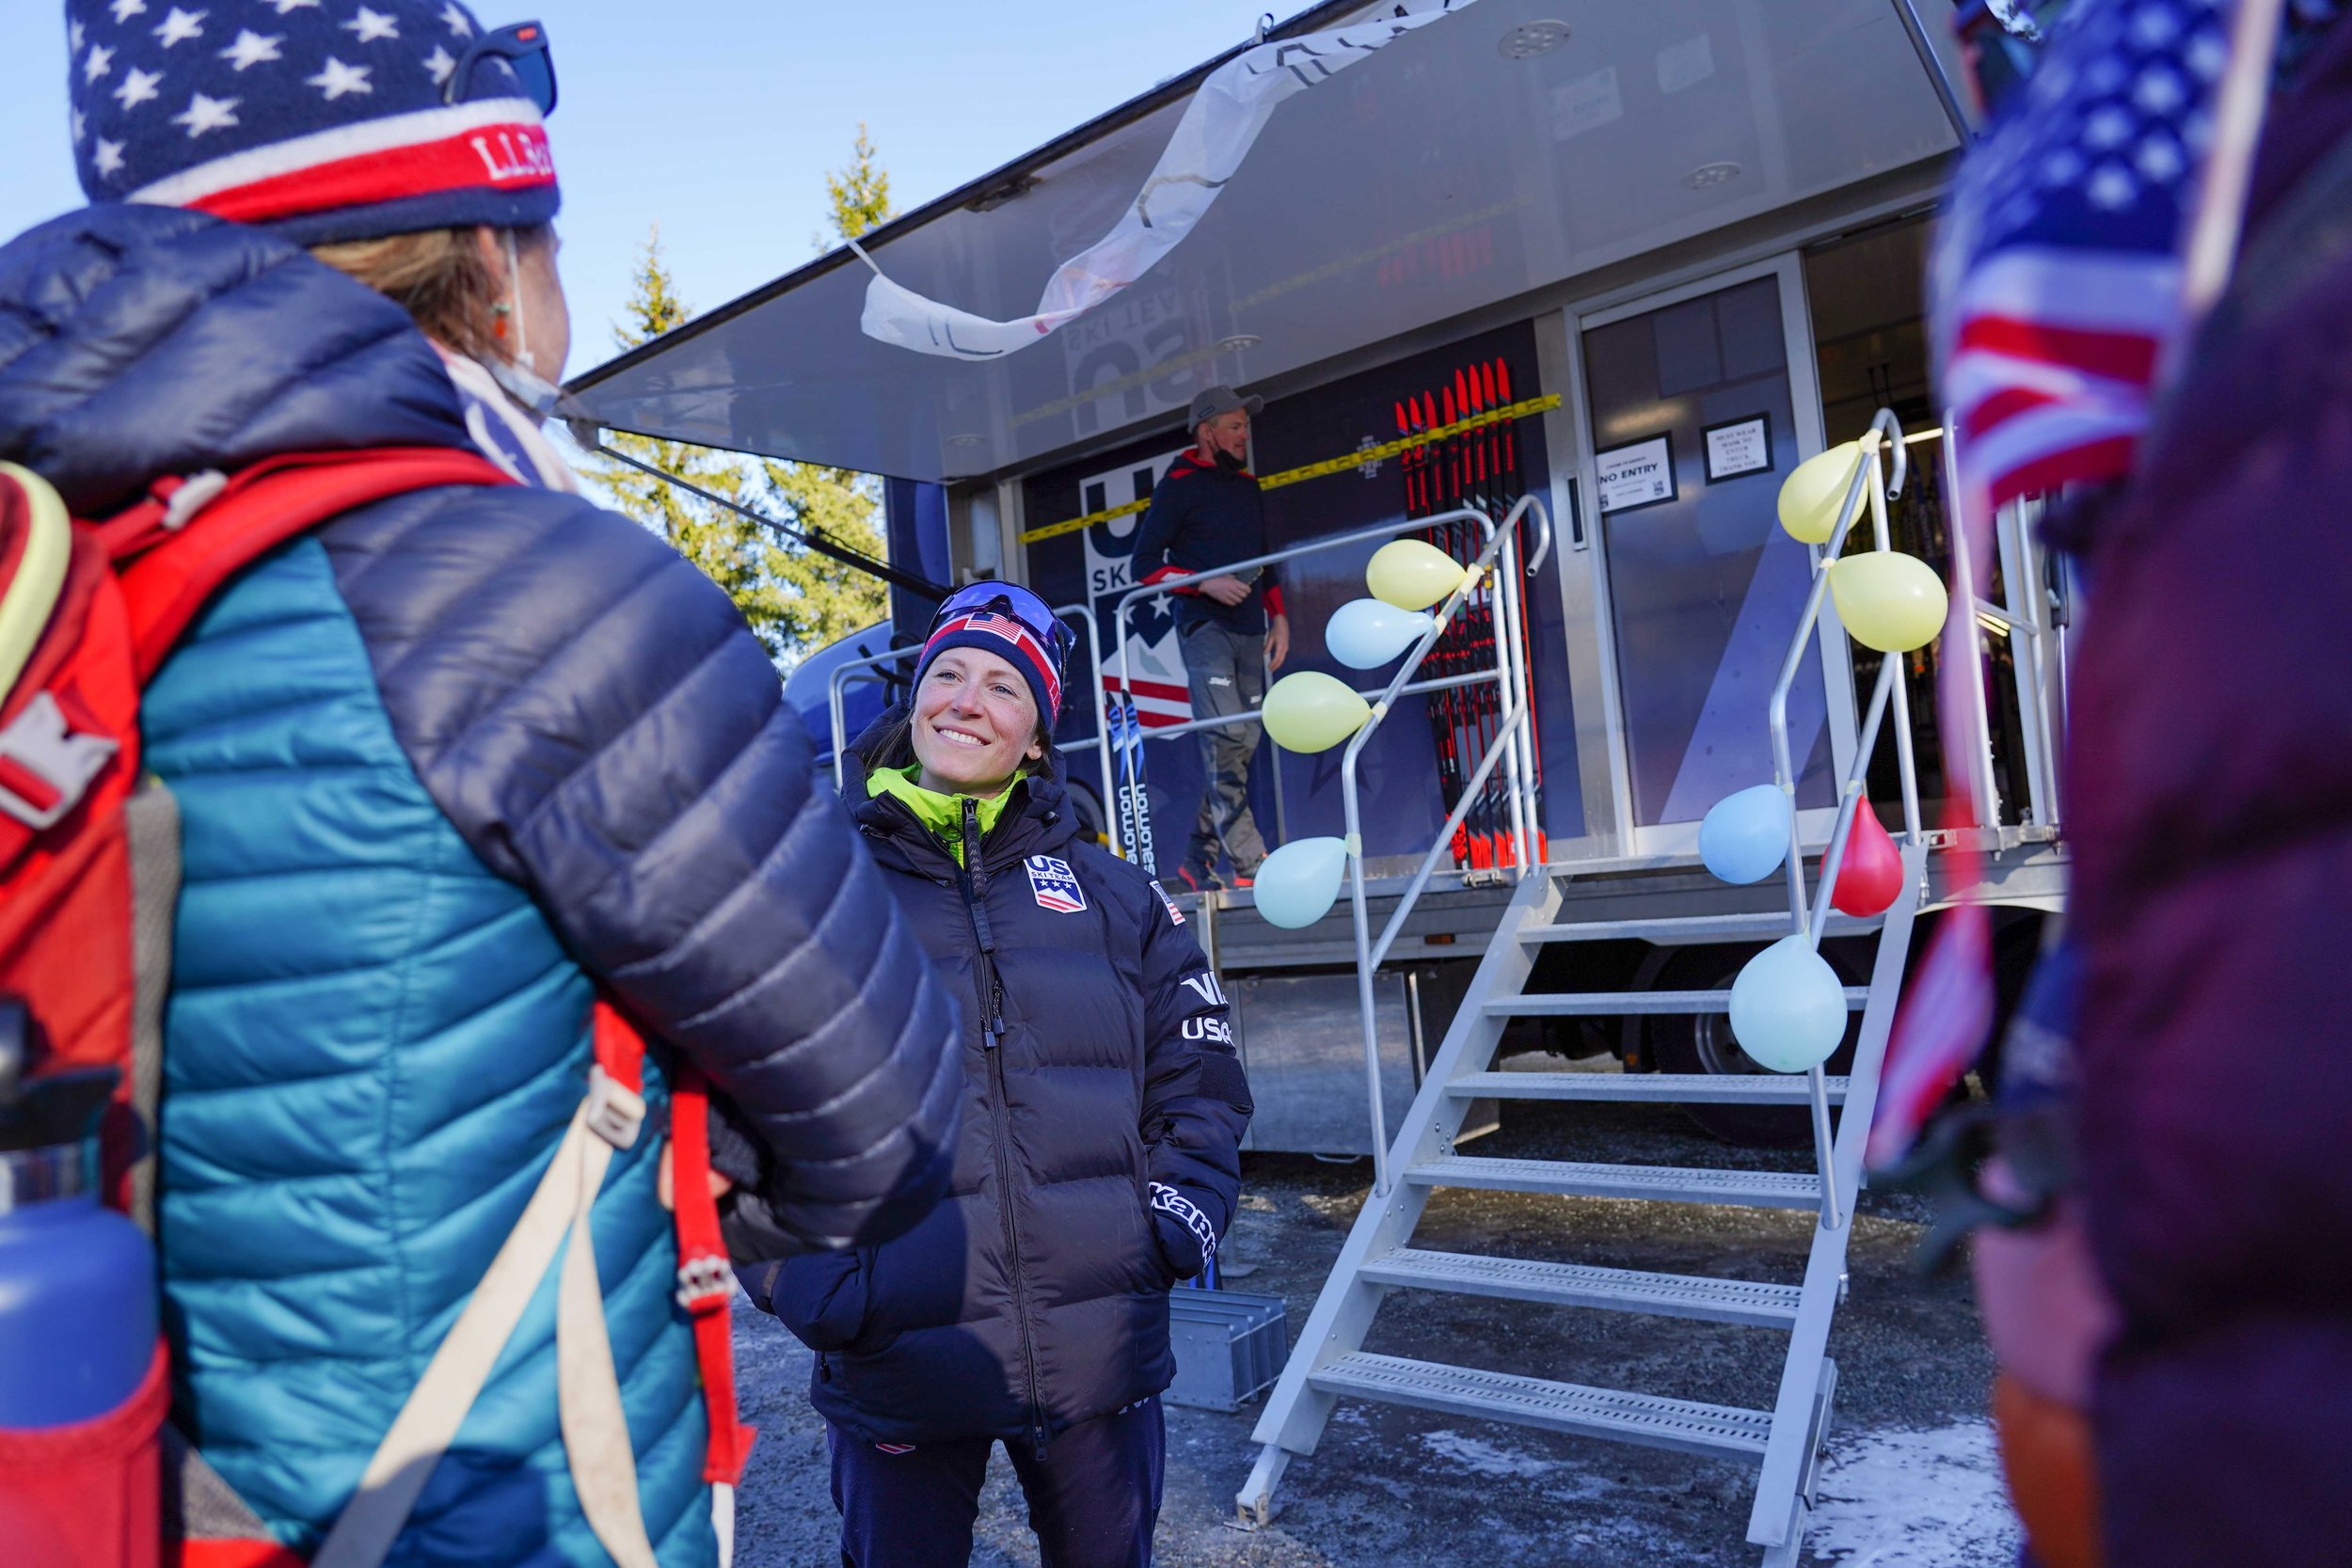 Admission & special access at Tour de Ski events